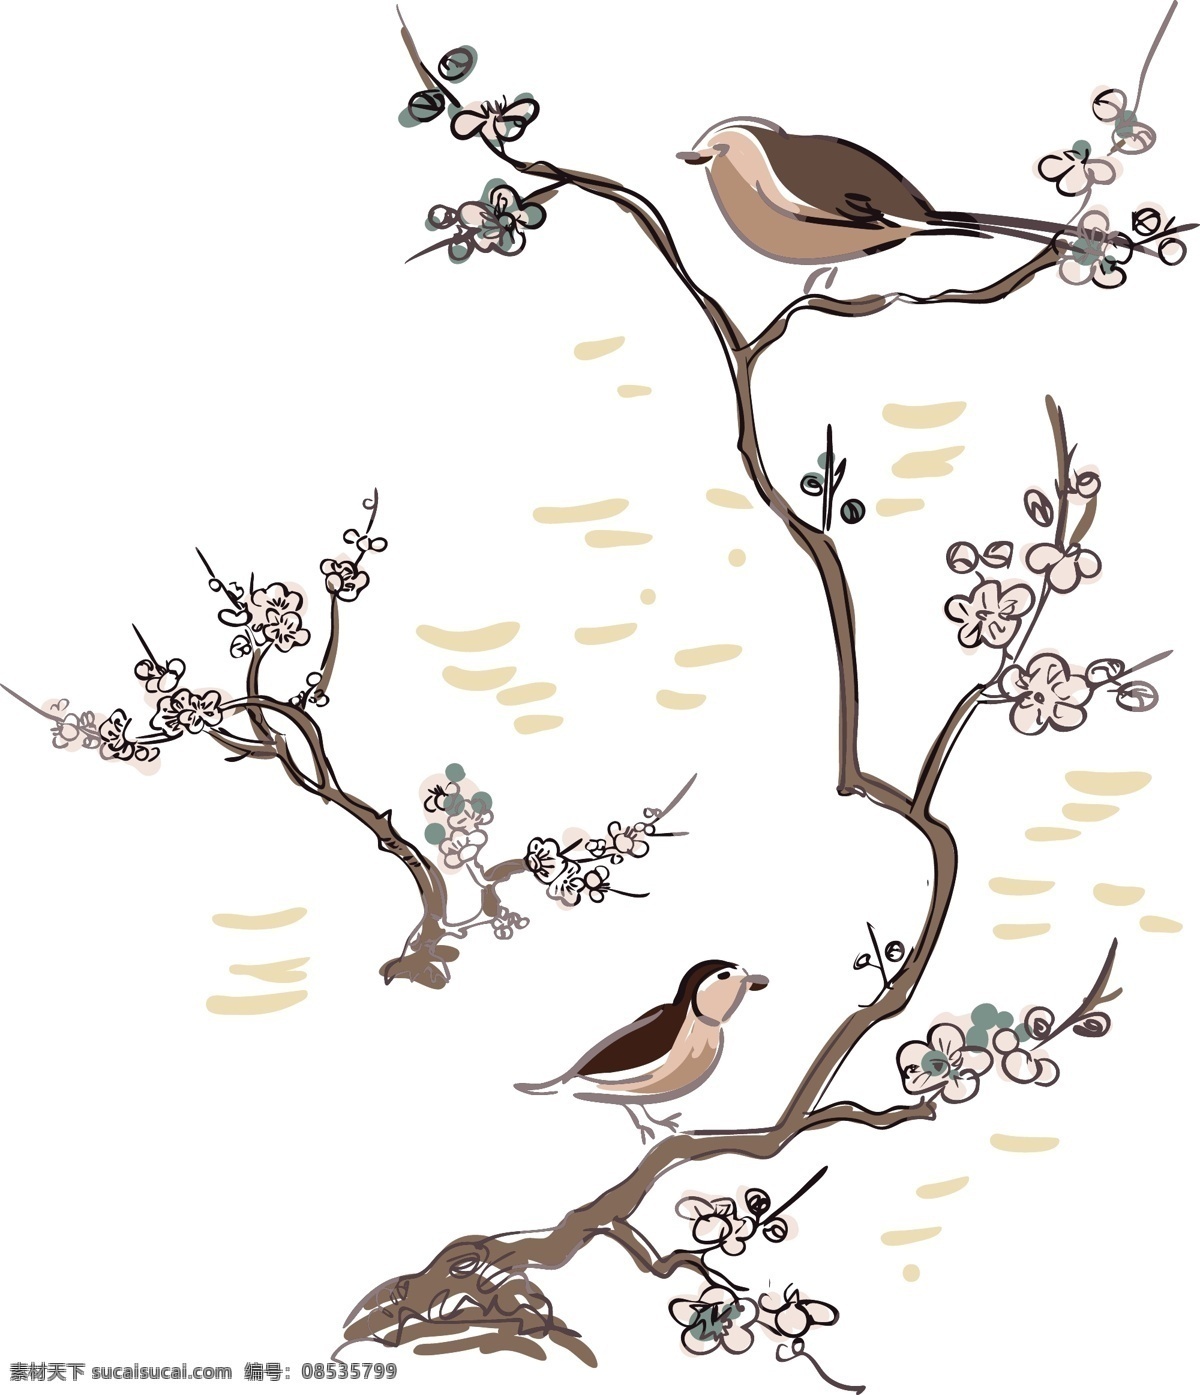 植物鸟儿 矢量图 大牌图案 抽象图案 植物 鸟儿 精美 面料 图案 花型 底纹边框 背景底纹